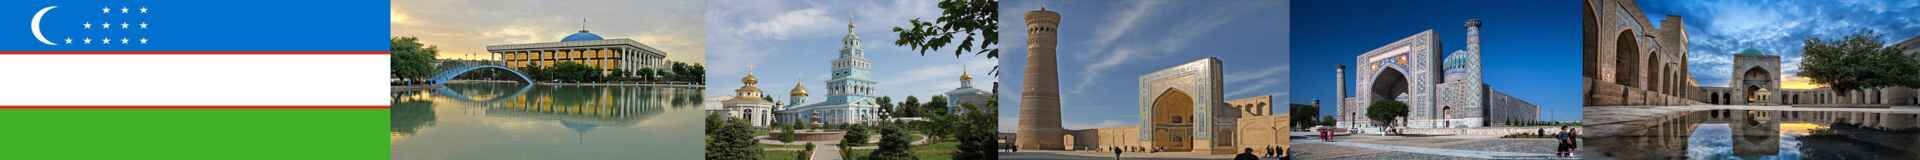 Usbekistan Ausschreibungen der Regierung